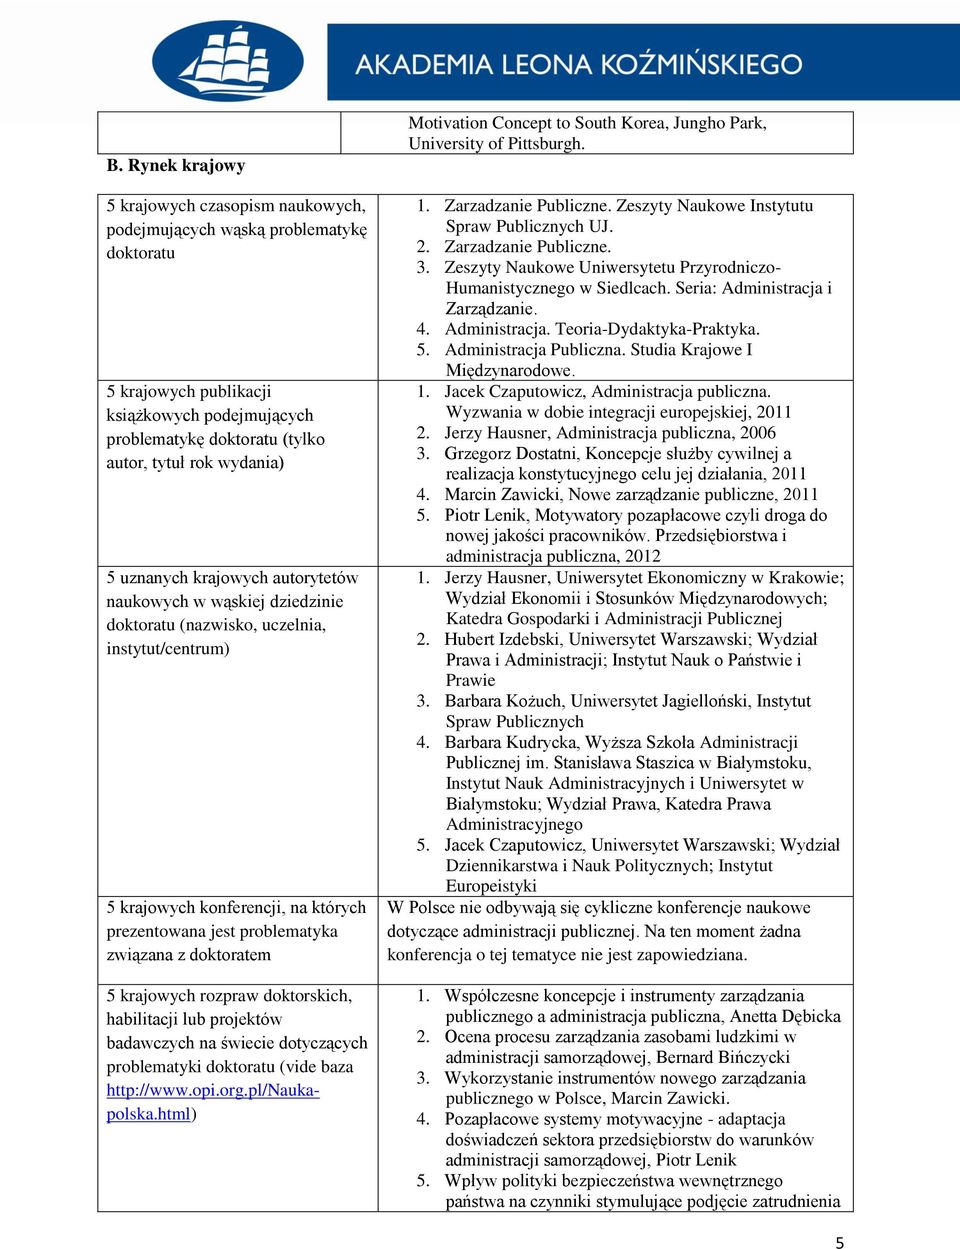 5 krajowych rozpraw doktorskich, habilitacji lub projektów badawczych na świecie dotyczących problematyki doktoratu (vide baza http://www.opi.org.pl/naukapolska.